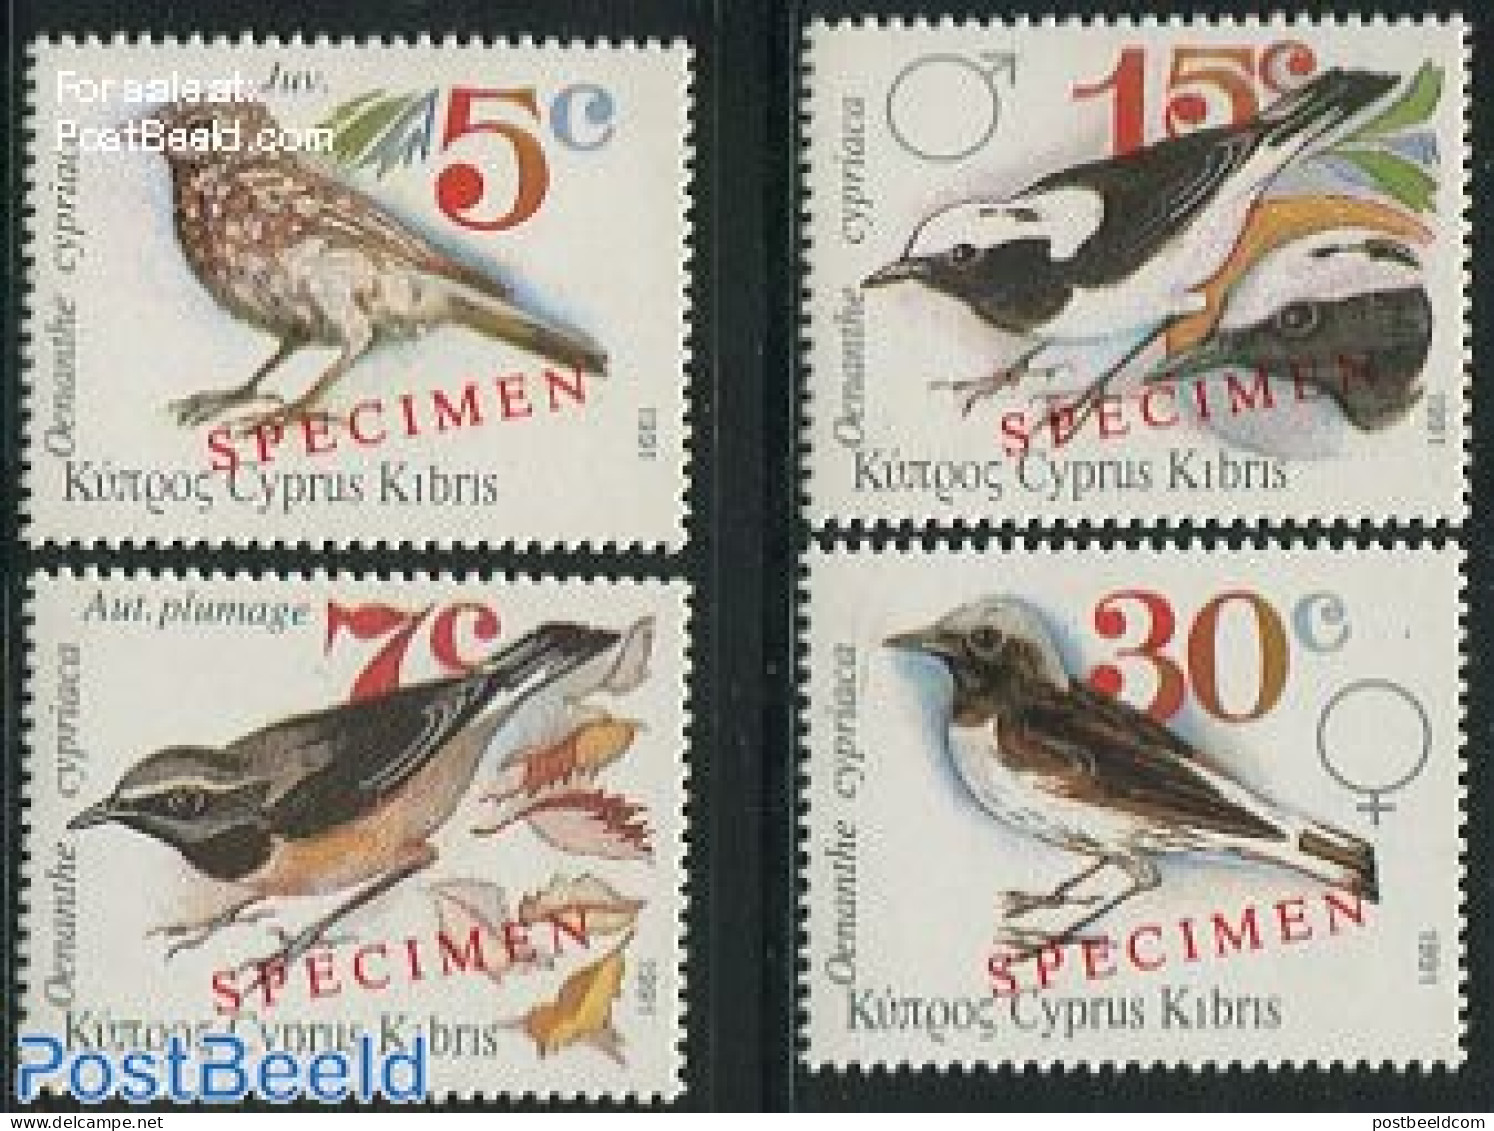 Cyprus 1991 Birds 4v SPECIMEN, Mint NH, Nature - Birds - Neufs